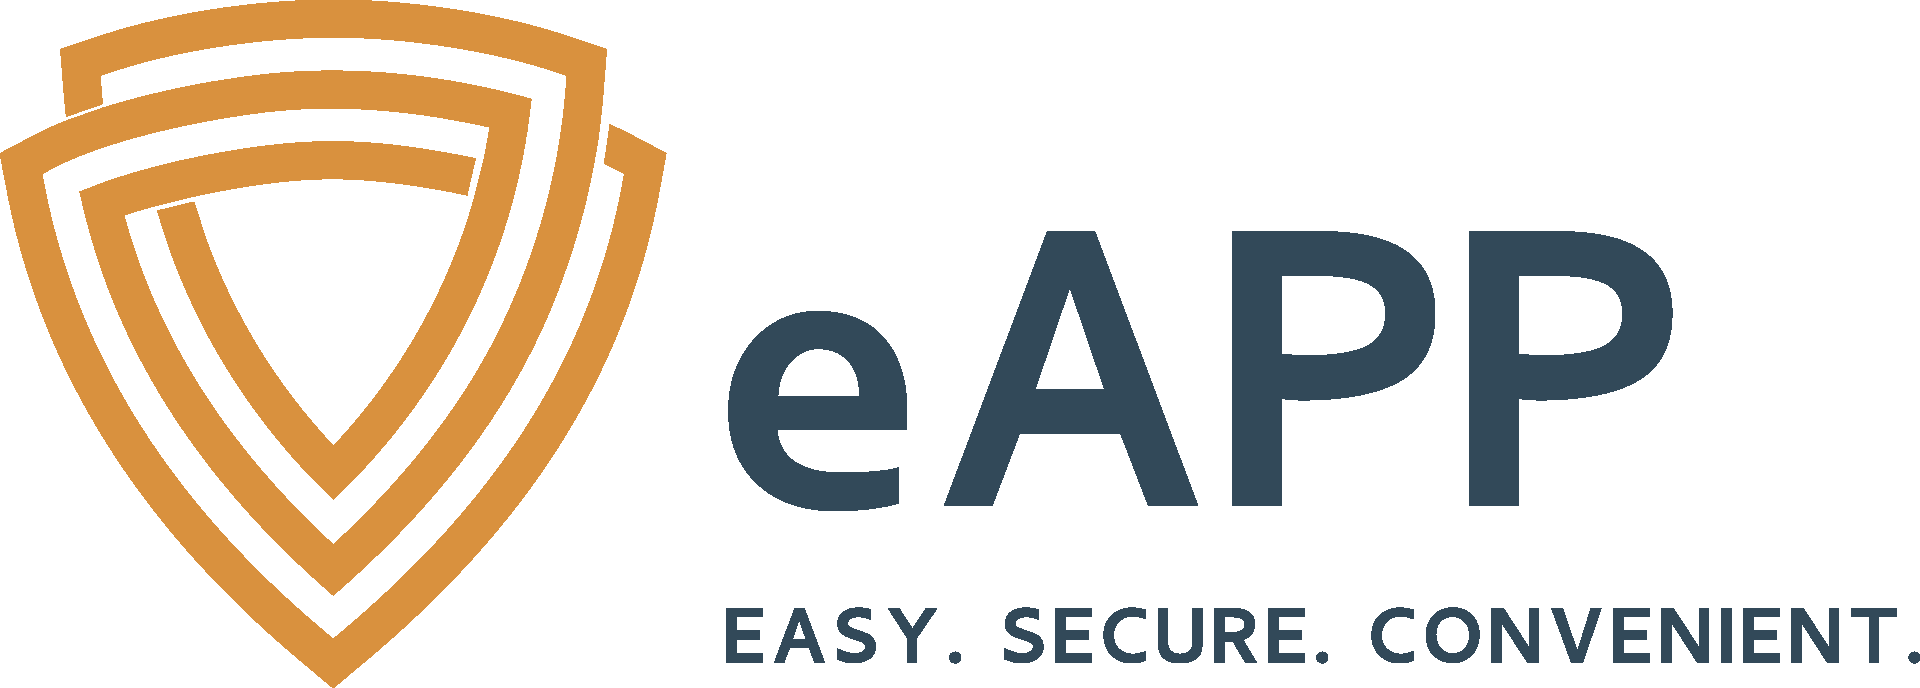 eAPP logo dark